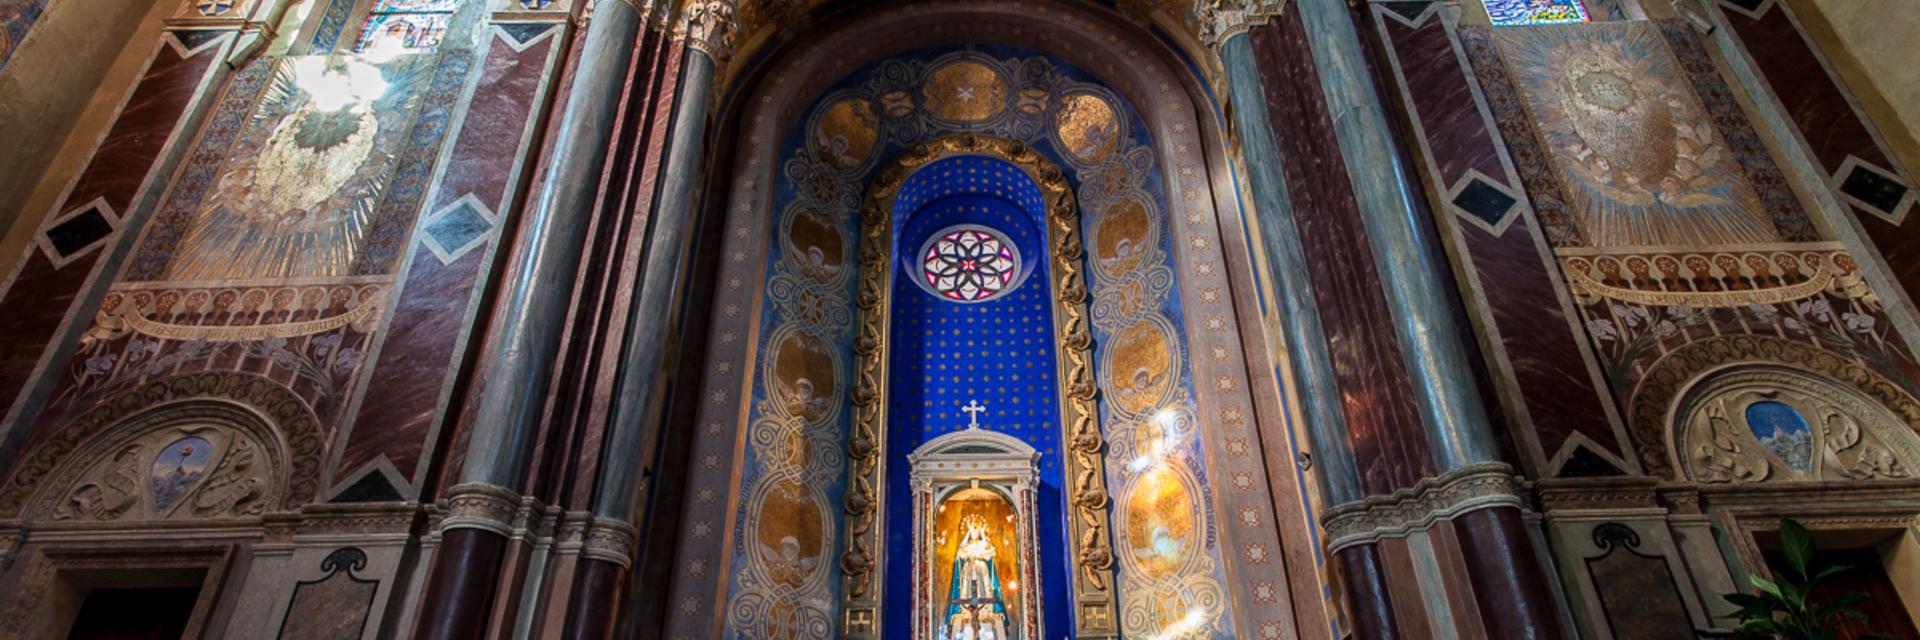 Santuario della Madonna delle Grazie Monteodorisio